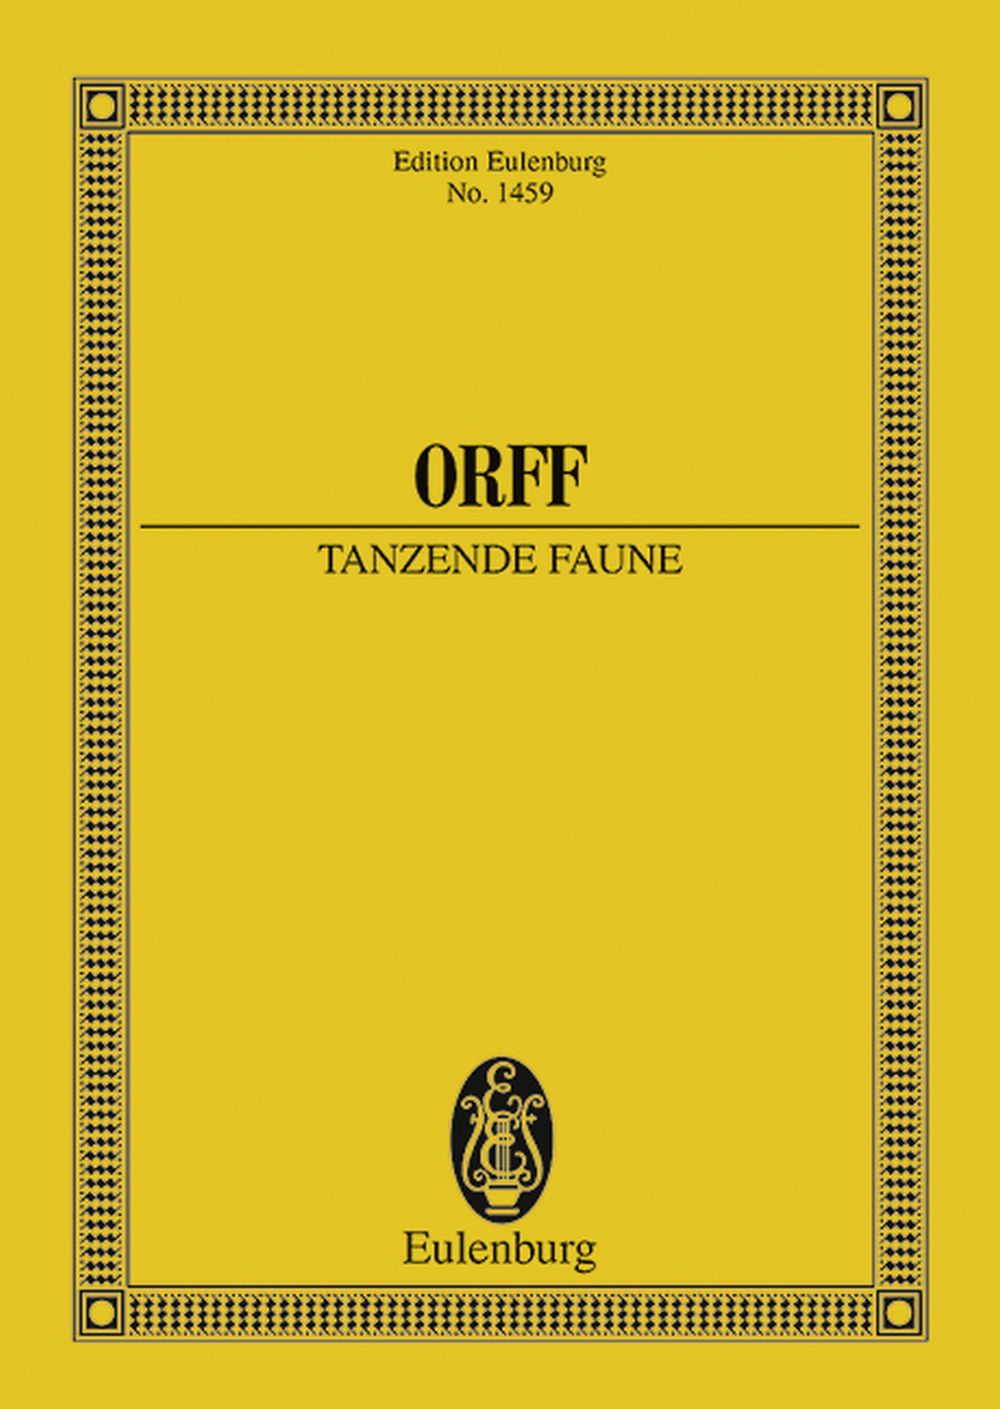 Carl Orff: Tanzende Faune op. 21: Orchestra: Miniature Score